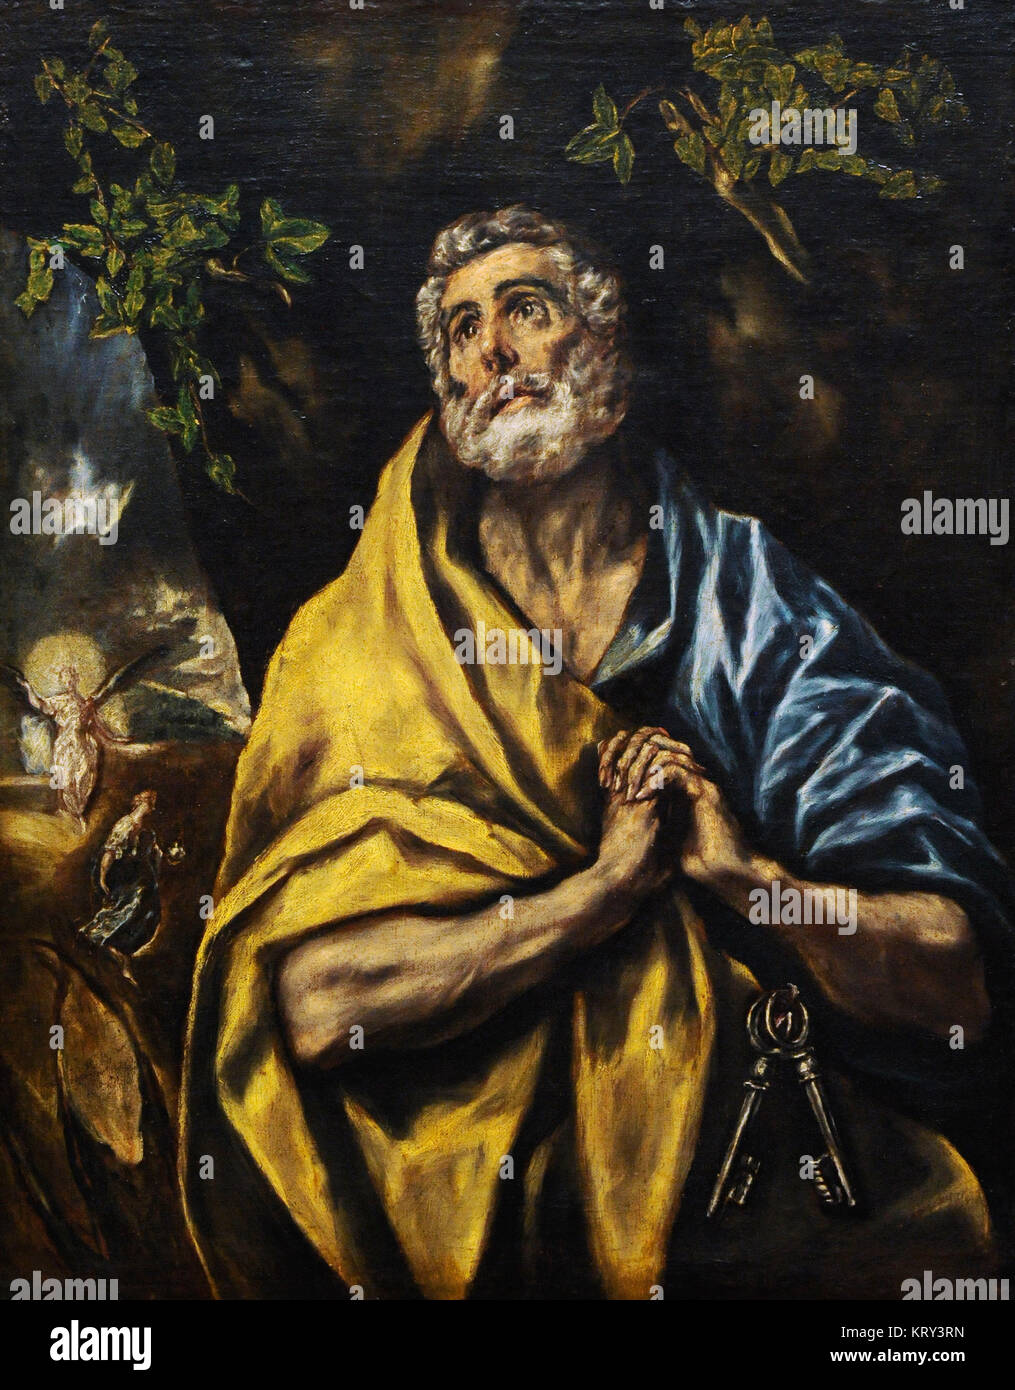 El Greco (1541-1614). Peintre de Crète. Saint Peter repenti, 1590. Galerie nationale. Oslo. La Norvège. Banque D'Images